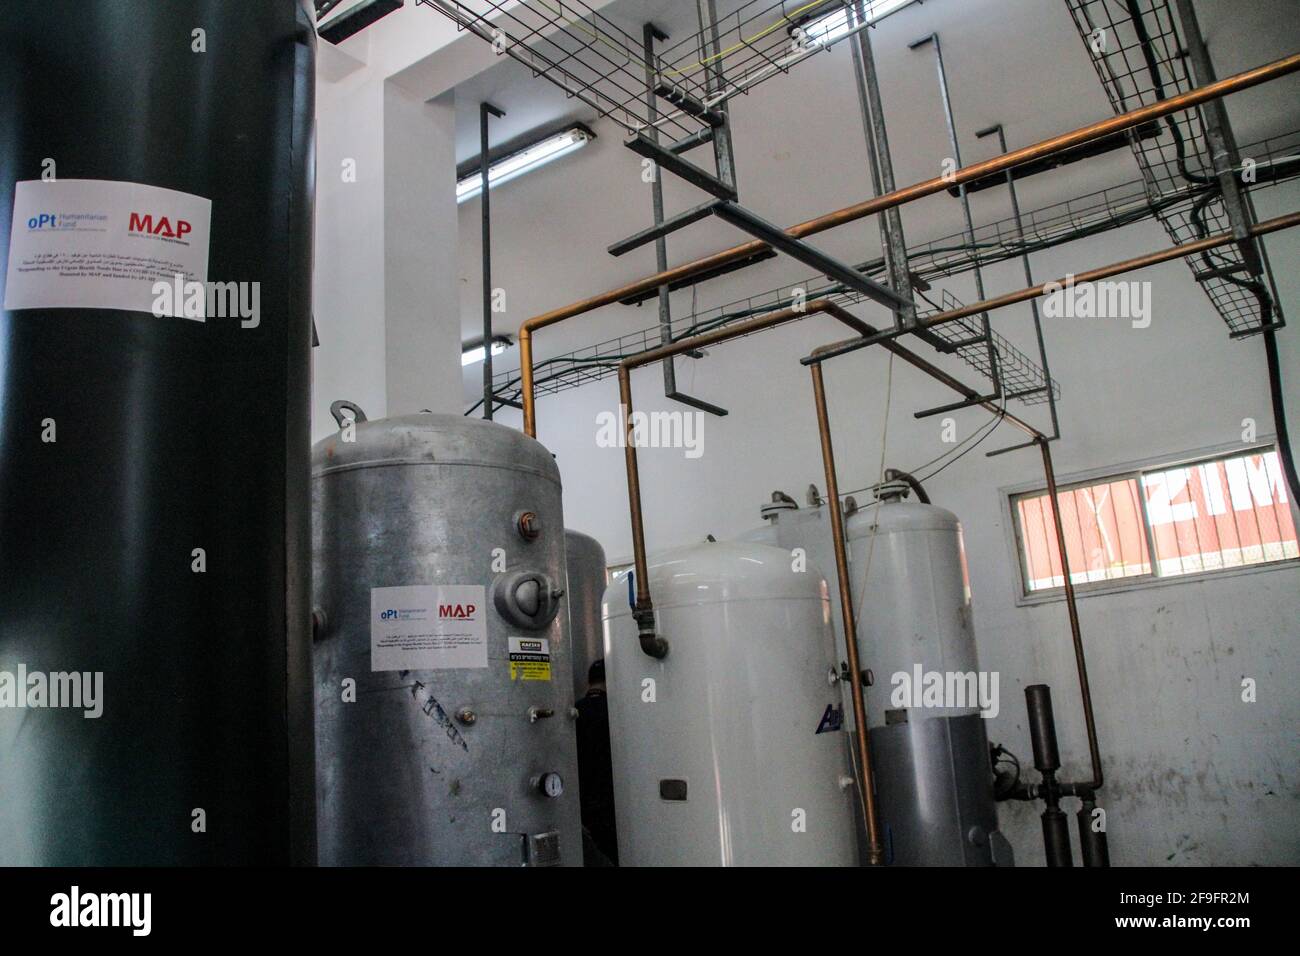 11 novembre 2021 : Gaza, Palestine. 18 avril 2021. Le Ministère palestinien de la santé à Gaza inaugure une nouvelle centrale de production d'oxygène pour produire de l'oxygène de qualité médicale au complexe médical d'Al-Shifa, dans la ville de Gaza. Les nouvelles installations augmenteront la disponibilité de l'oxygène pour le soutien ad traitement des patients Covid-19 dans la bande de Gaza crédit: Ahmad Hasaballah/IMAGESLIVE/ZUMA Wire/Alamy Live News Banque D'Images